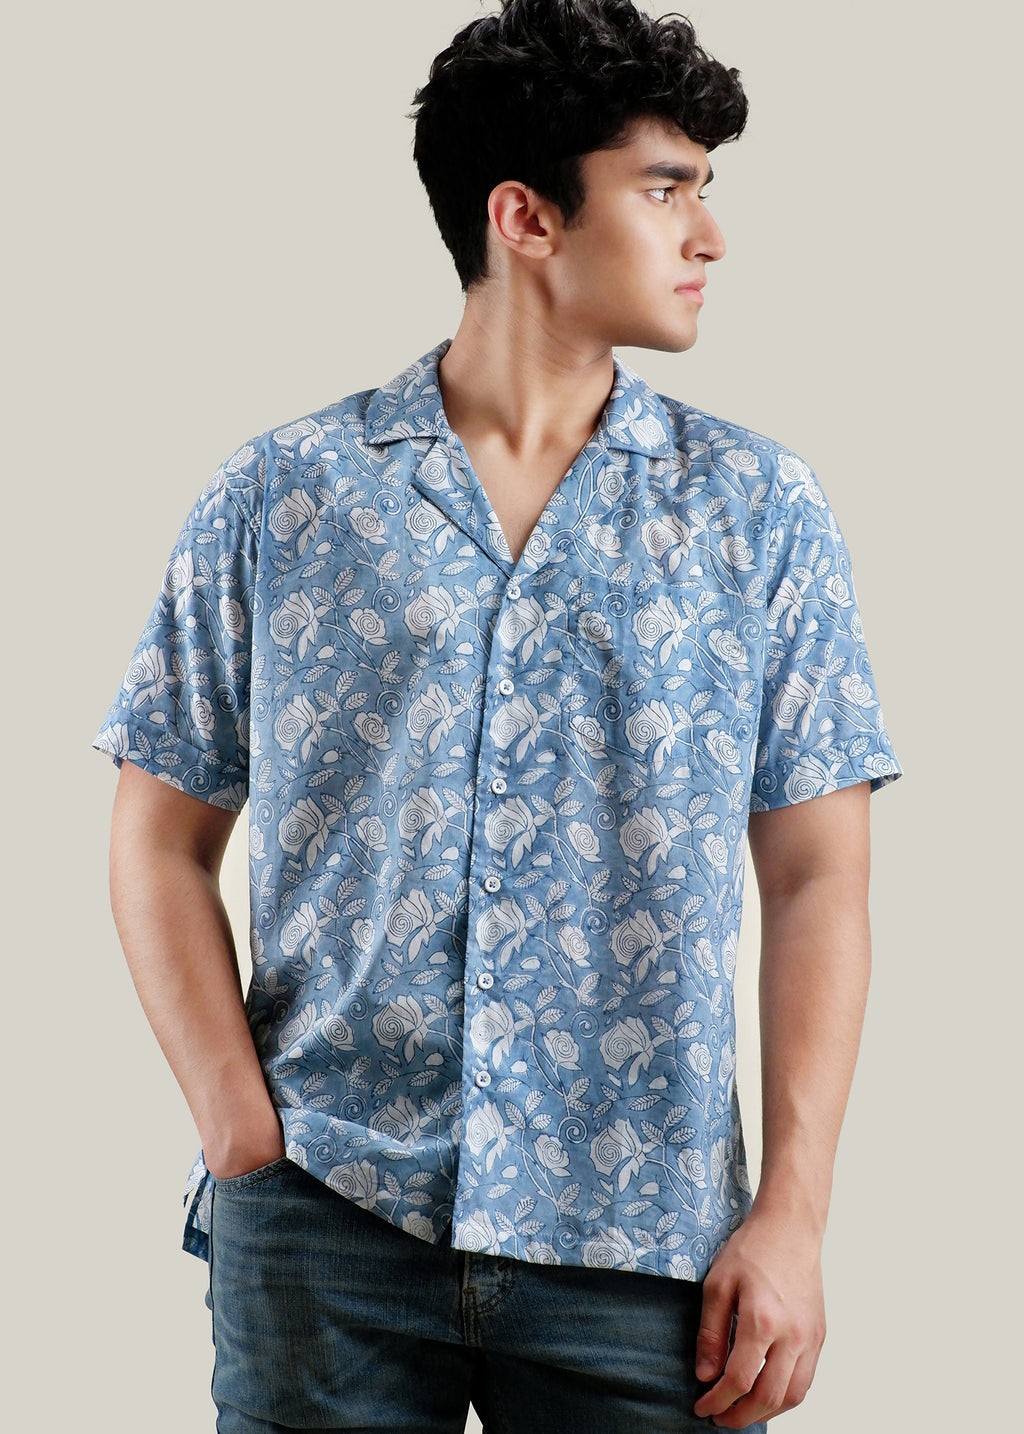 Buy Stylish Half Sleeve Shirt for Men Online at Ratan Jaipur - Rajasthan - Jaipur ID1535465